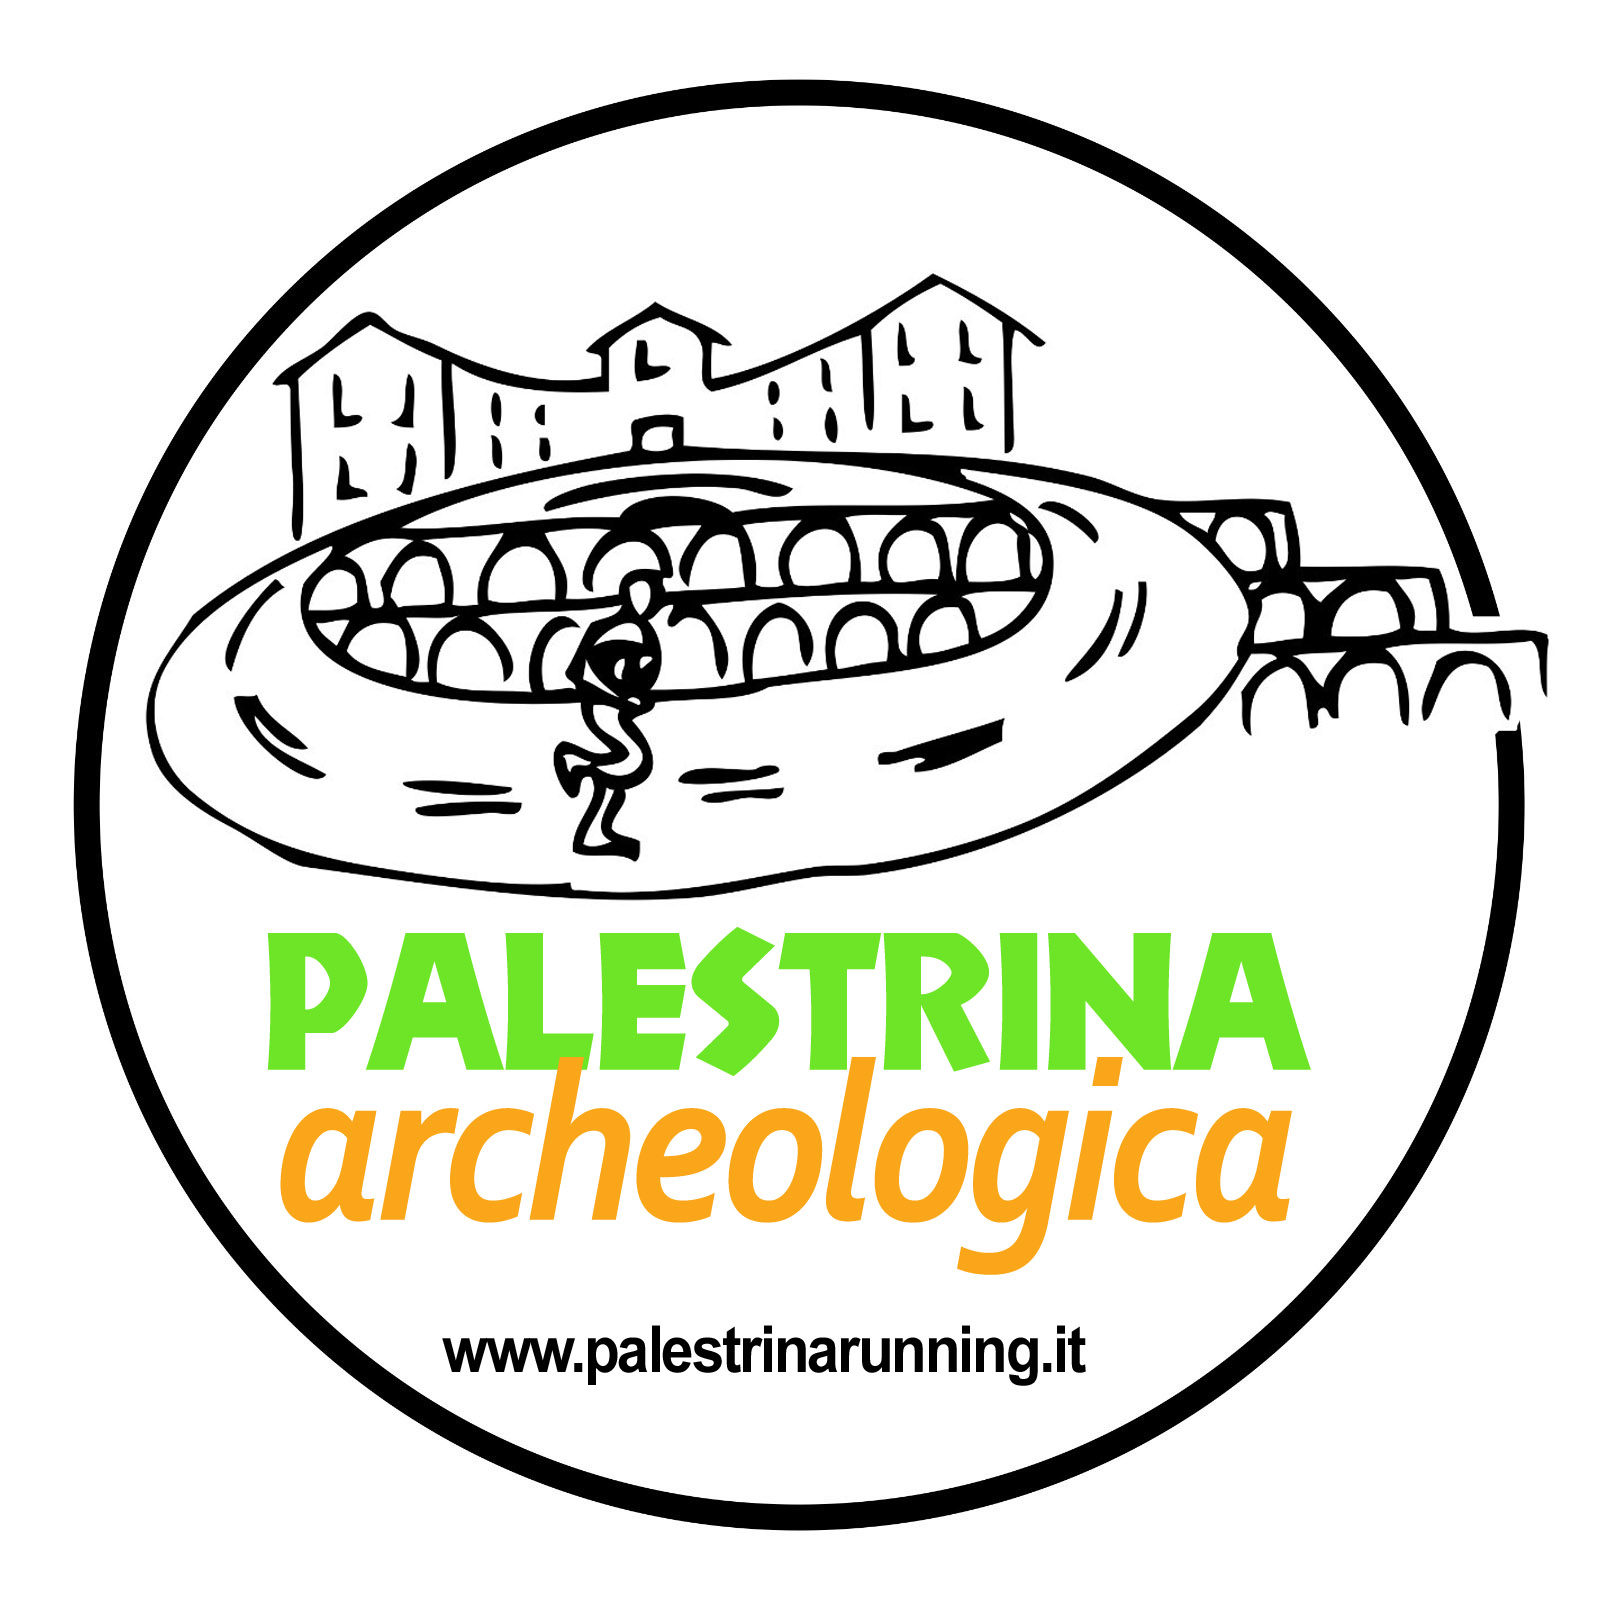 Palestrina Archeologica: atleti di corsa nella storia nel centro storico di Palestrina sabato 8 luglio